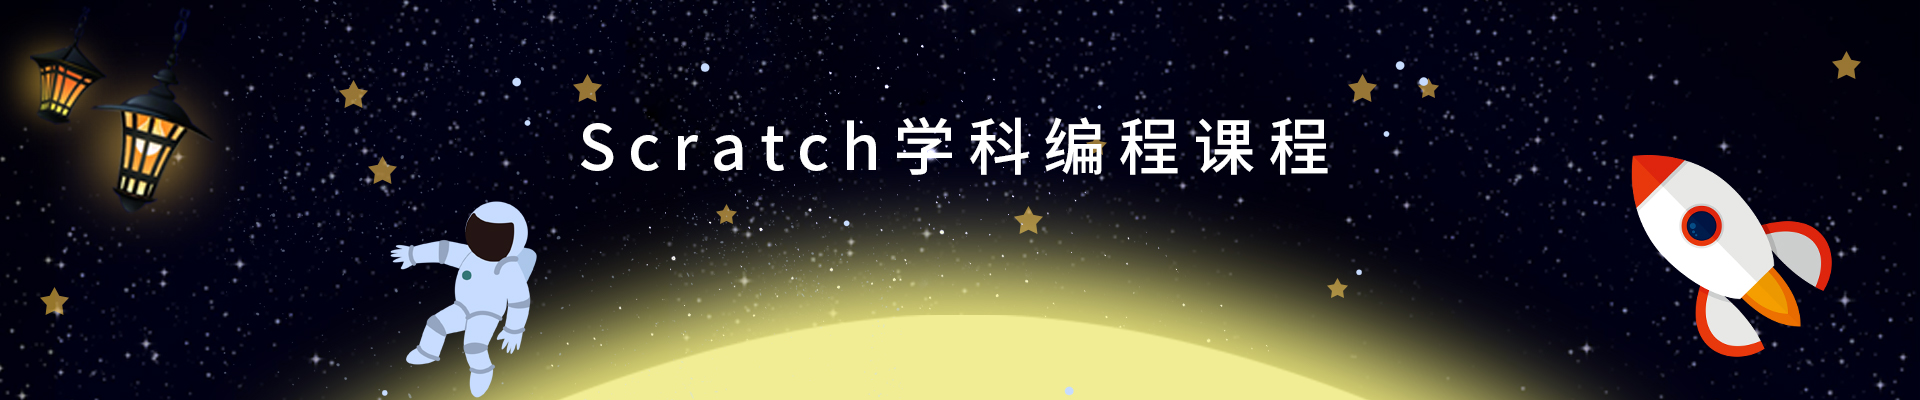 贵州Scratch少儿编程